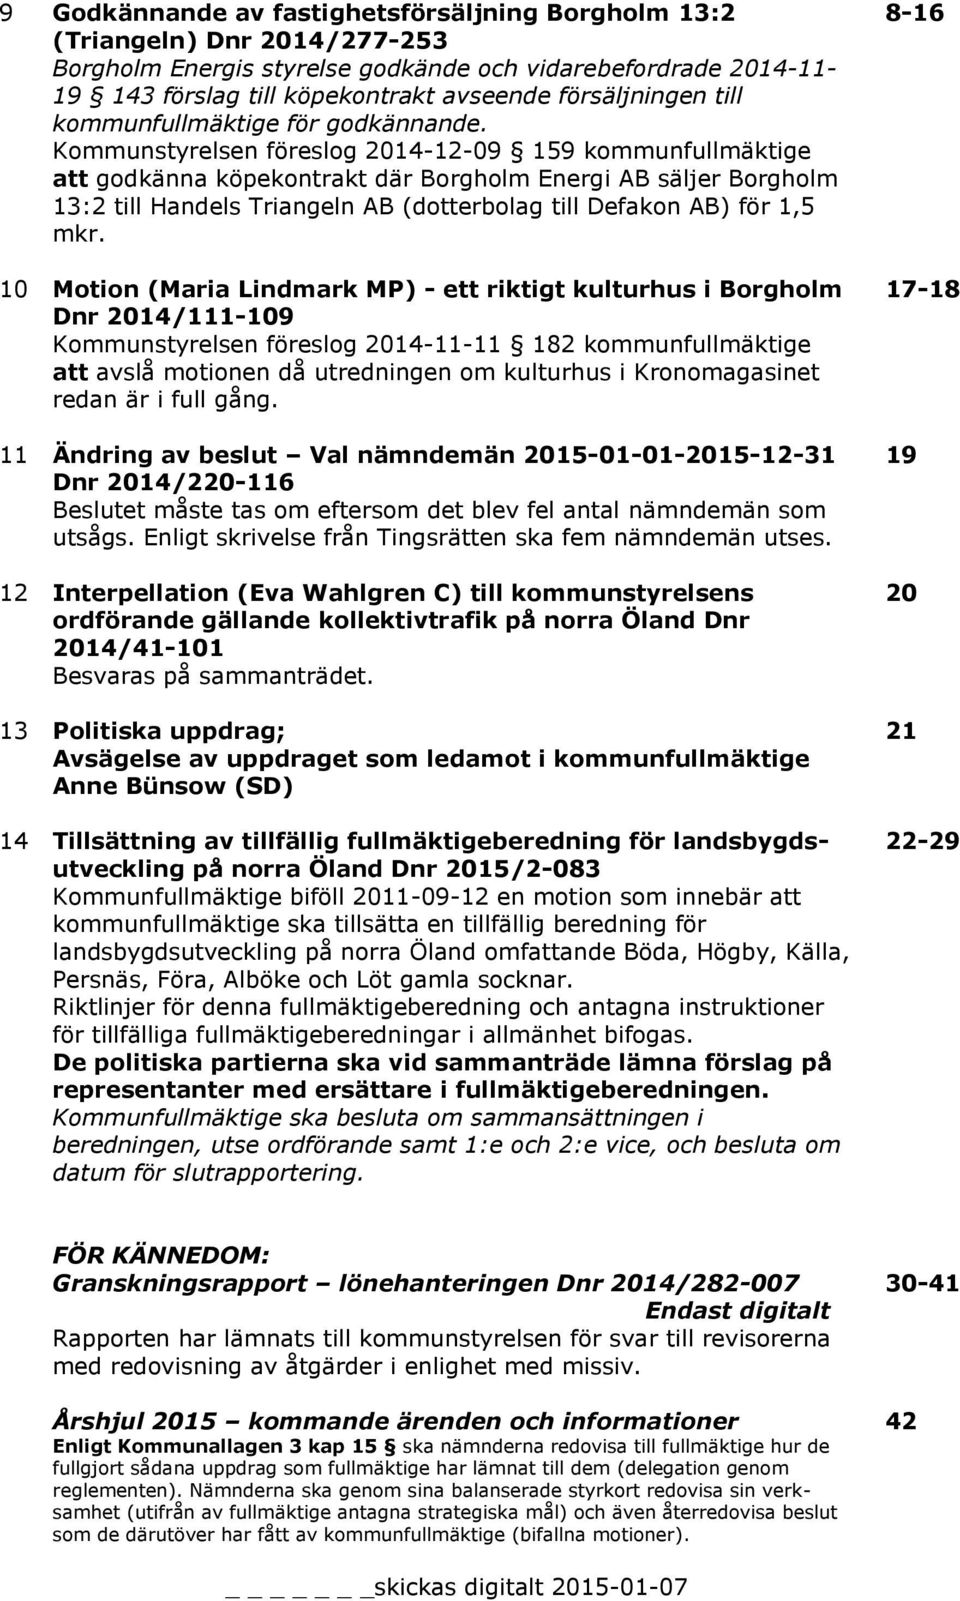 Kommunstyrelsen föreslog 2014-12-09 159 kommunfullmäktige att godkänna köpekontrakt där Borgholm Energi AB säljer Borgholm 13:2 till Handels Triangeln AB (dotterbolag till Defakon AB) för 1,5 mkr.